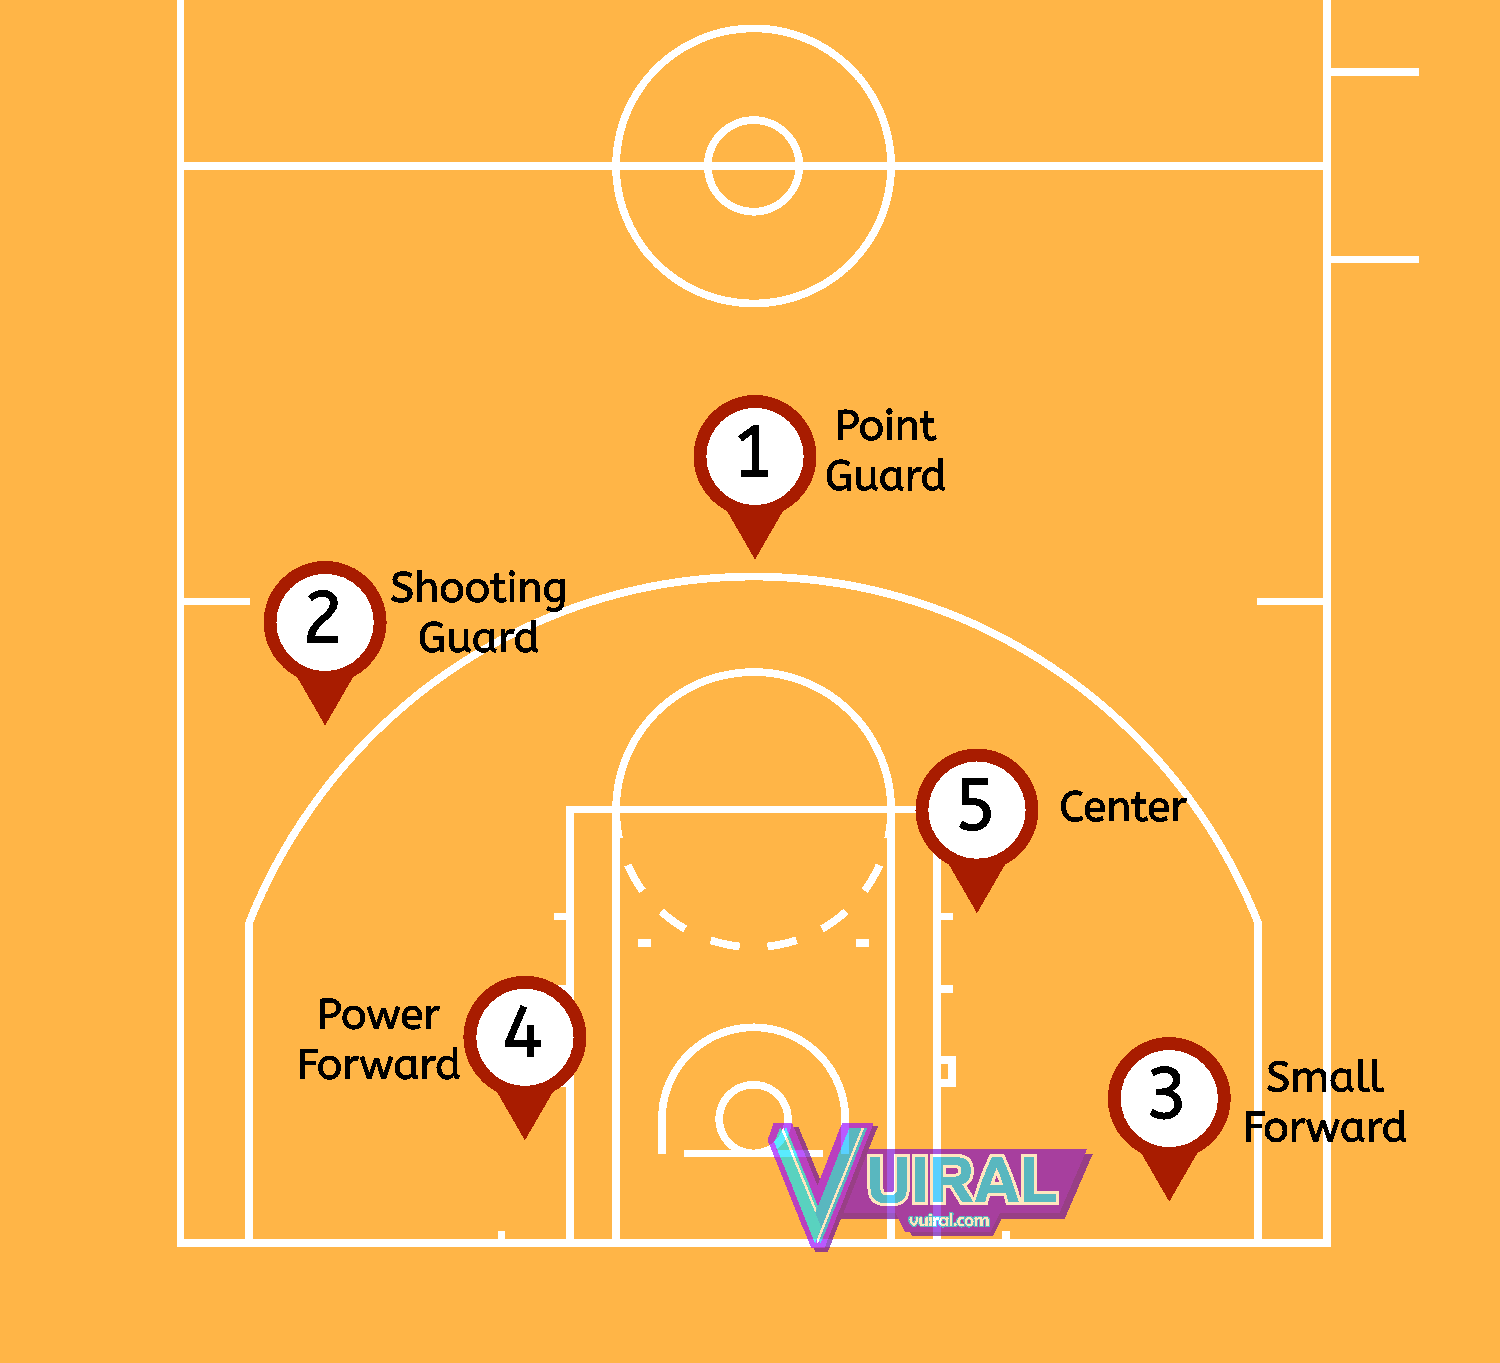 Gambar Nama Posisi Pemain Bola Basket Dan Tugasnya Lengkap Vuiral